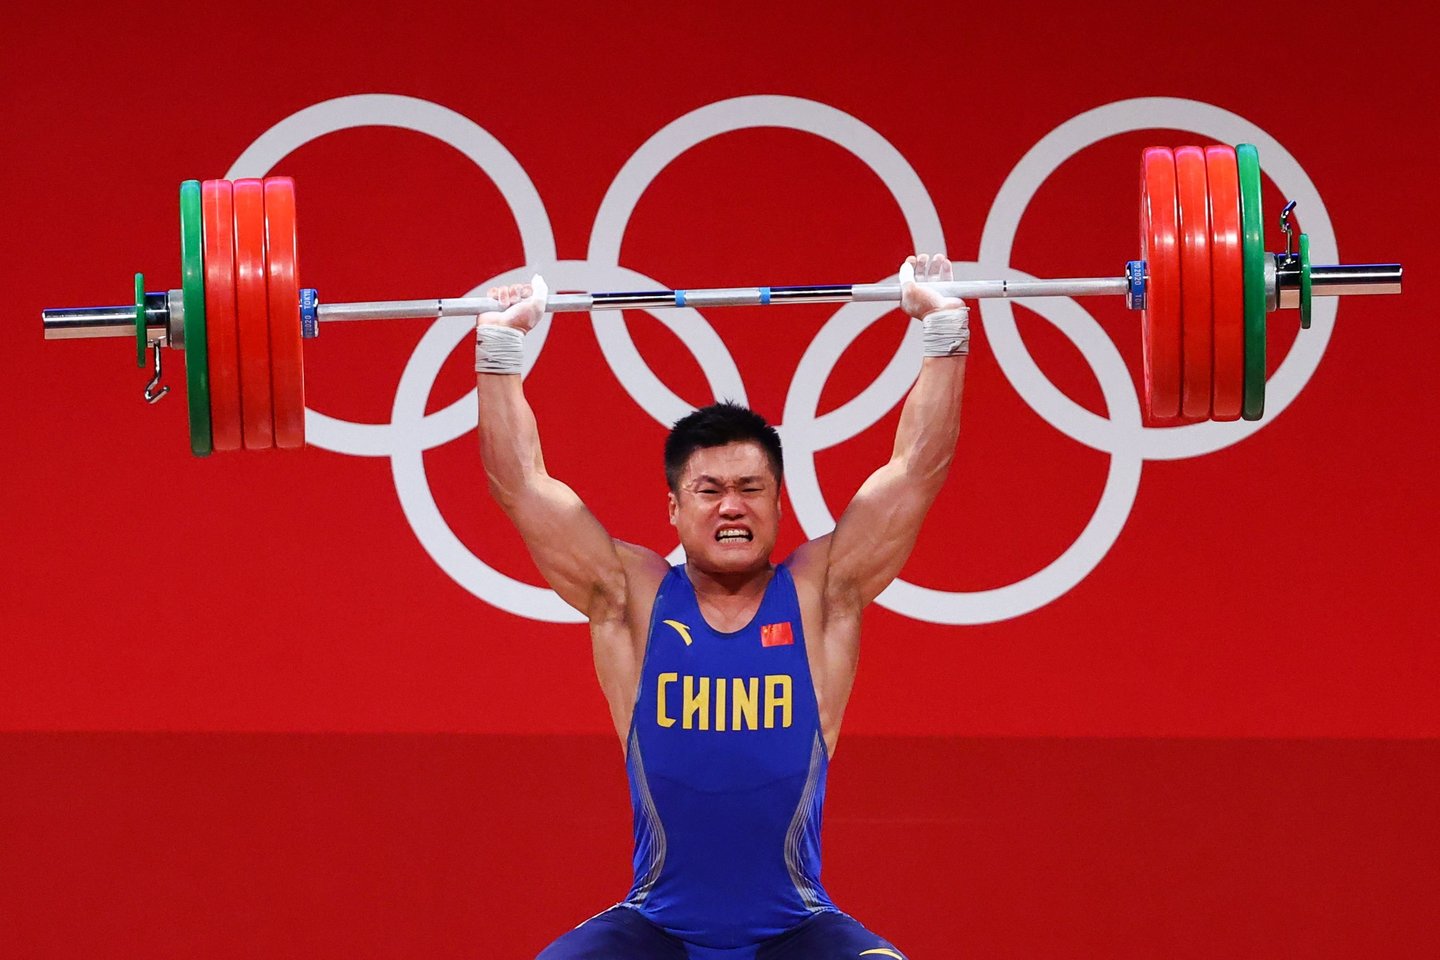 Pasaulio antidopingo agentūra (WADA) paskelbė, kad dėl draudžiamų medžiagų vartojimo nušalino trijų olimpinių aukso medalių laimėtoją, penkiskart pasaulio čempioną kiną Lyu Xiaojunį.